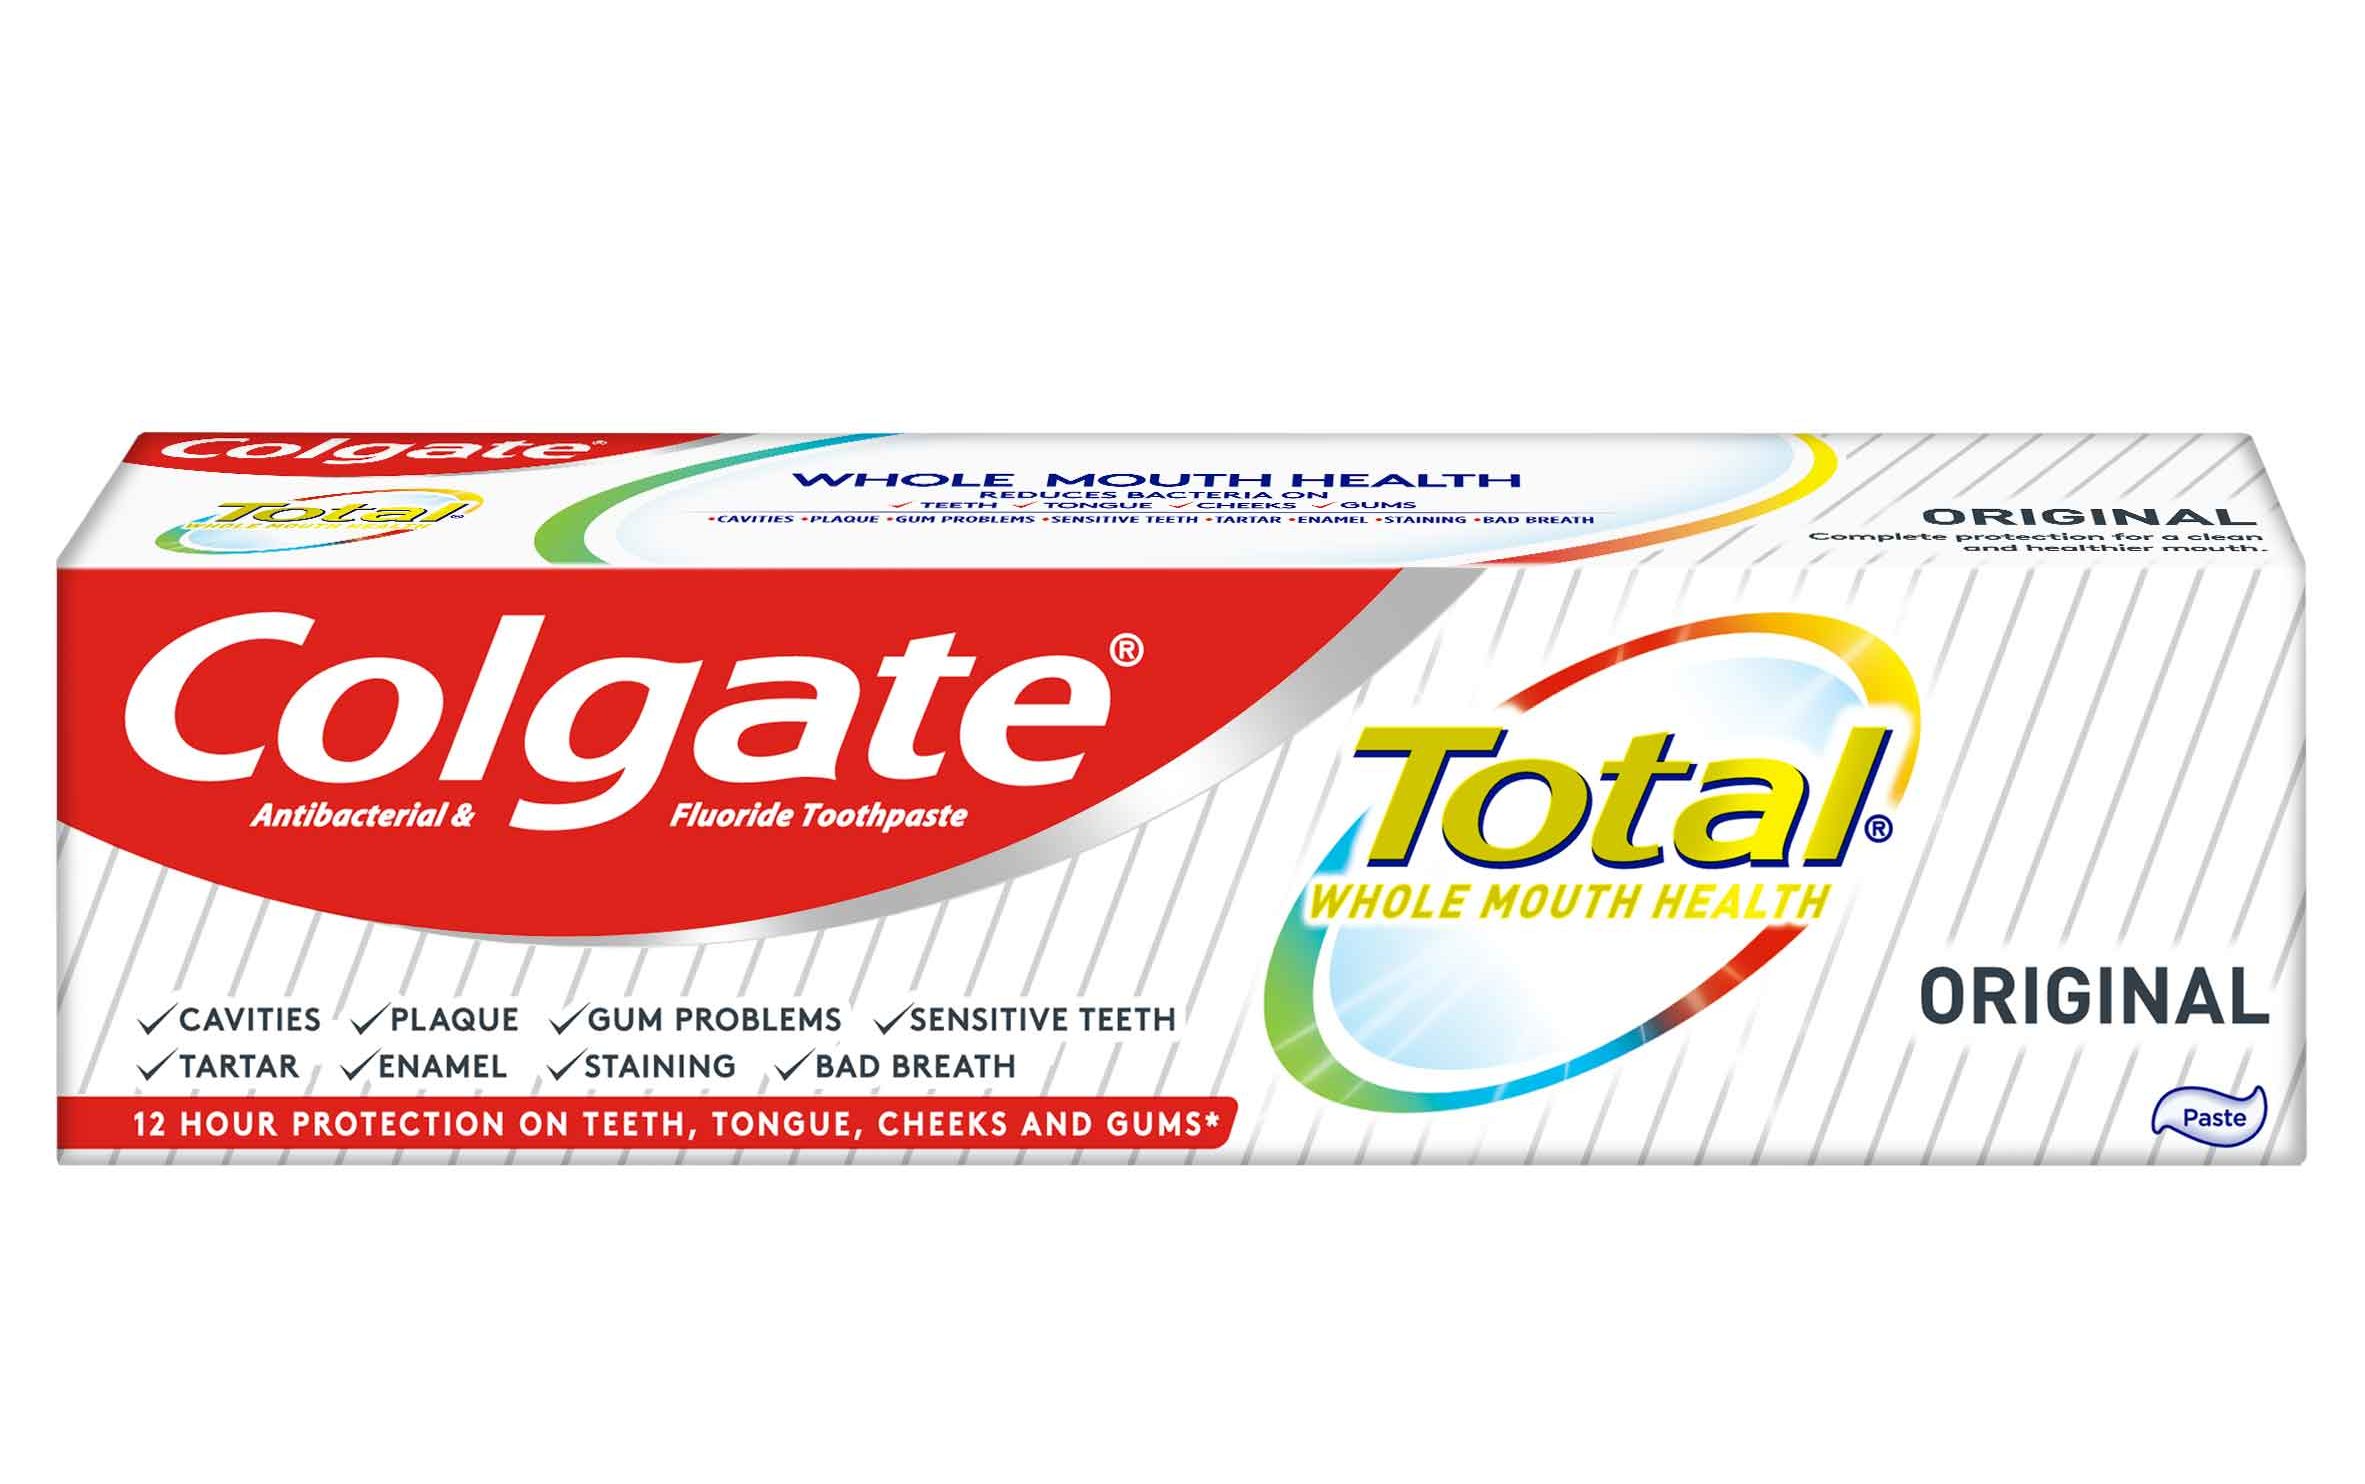 colgate total offering biofilm control